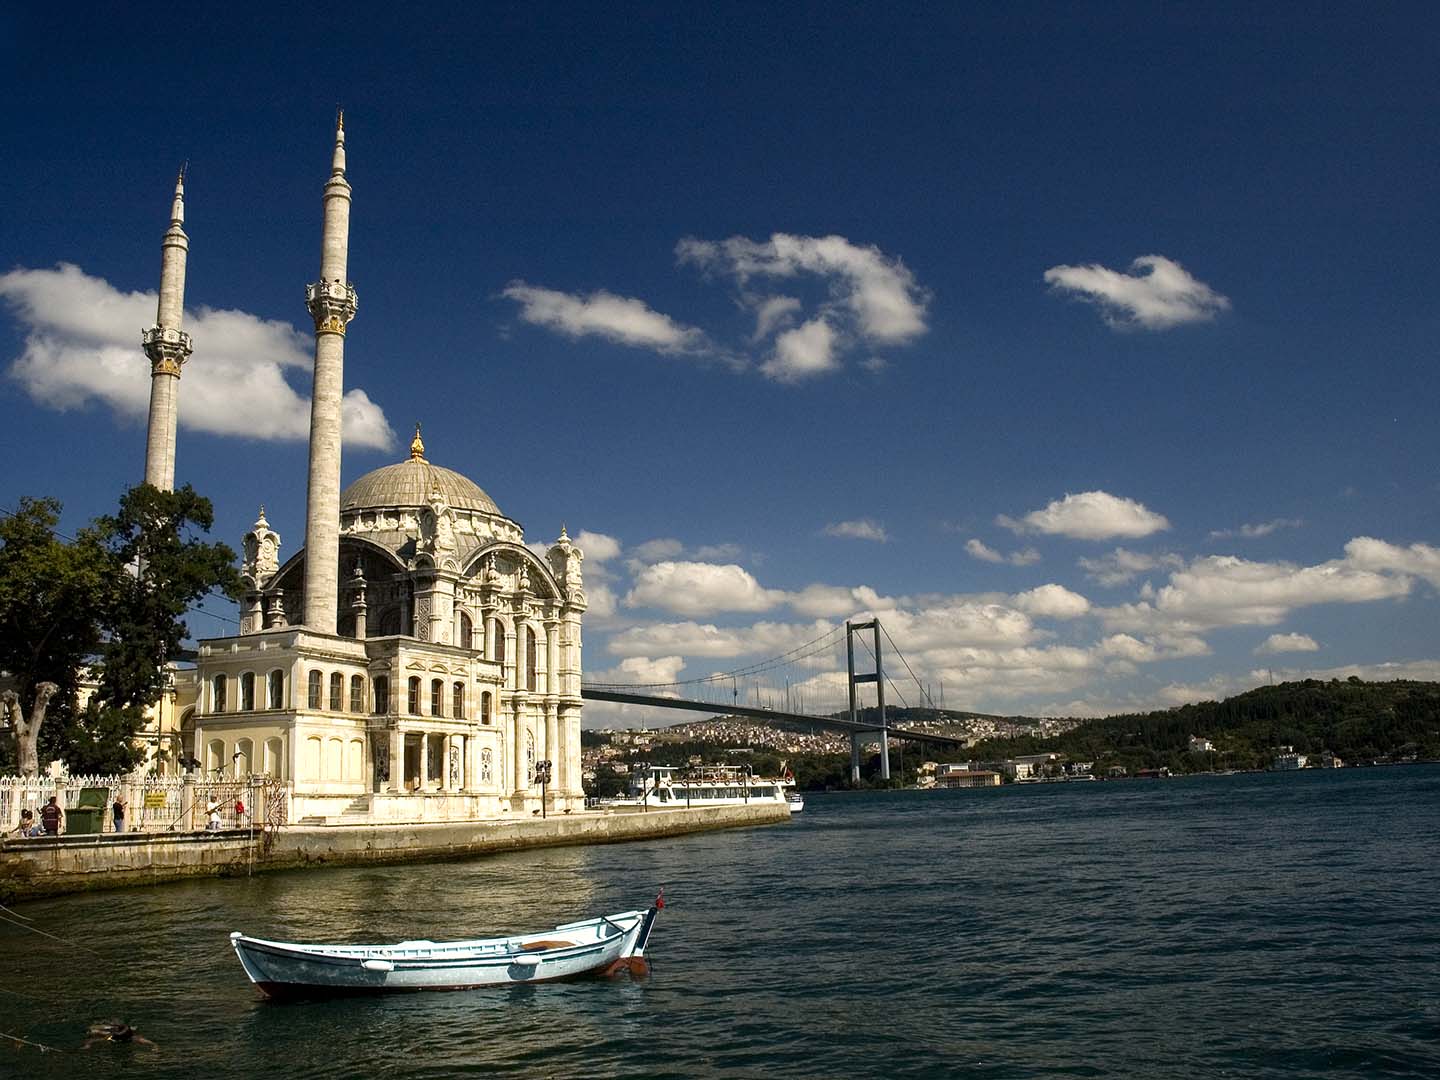 Most Instagrammable Spots in Turkey